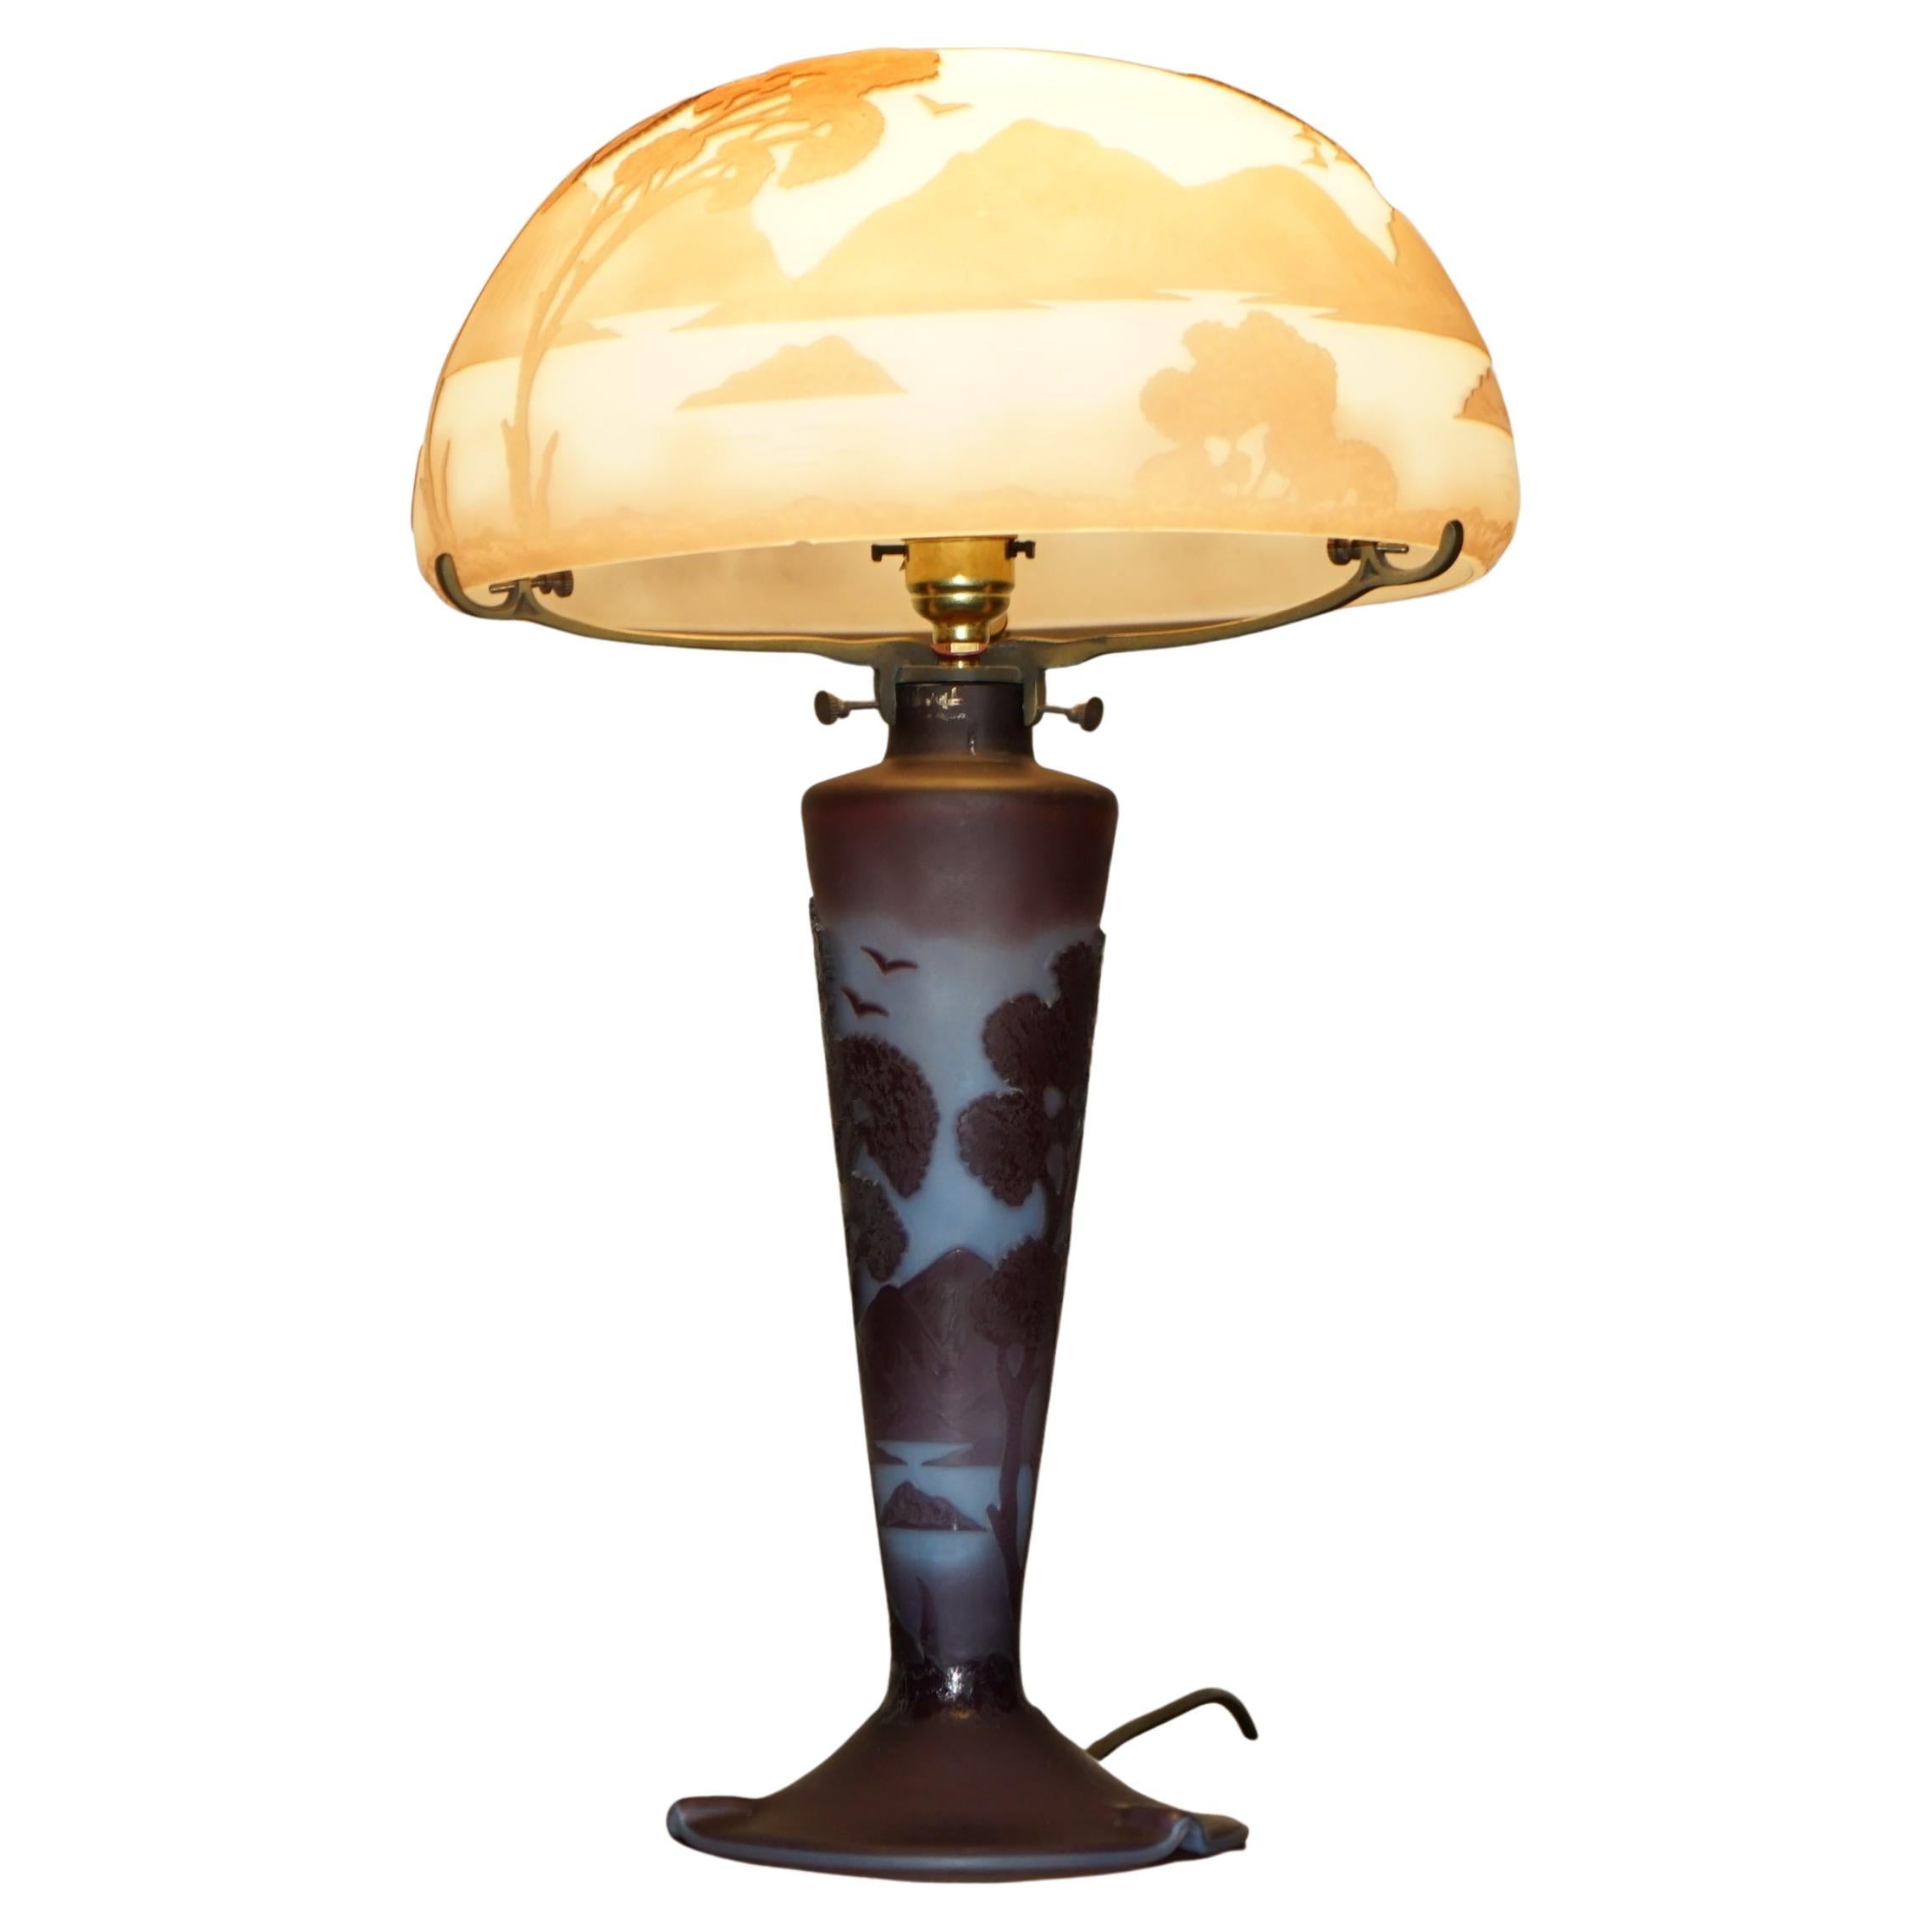 Vintage All Glass Art Nouveau Table Lamp After the Original Emile Galle Paris